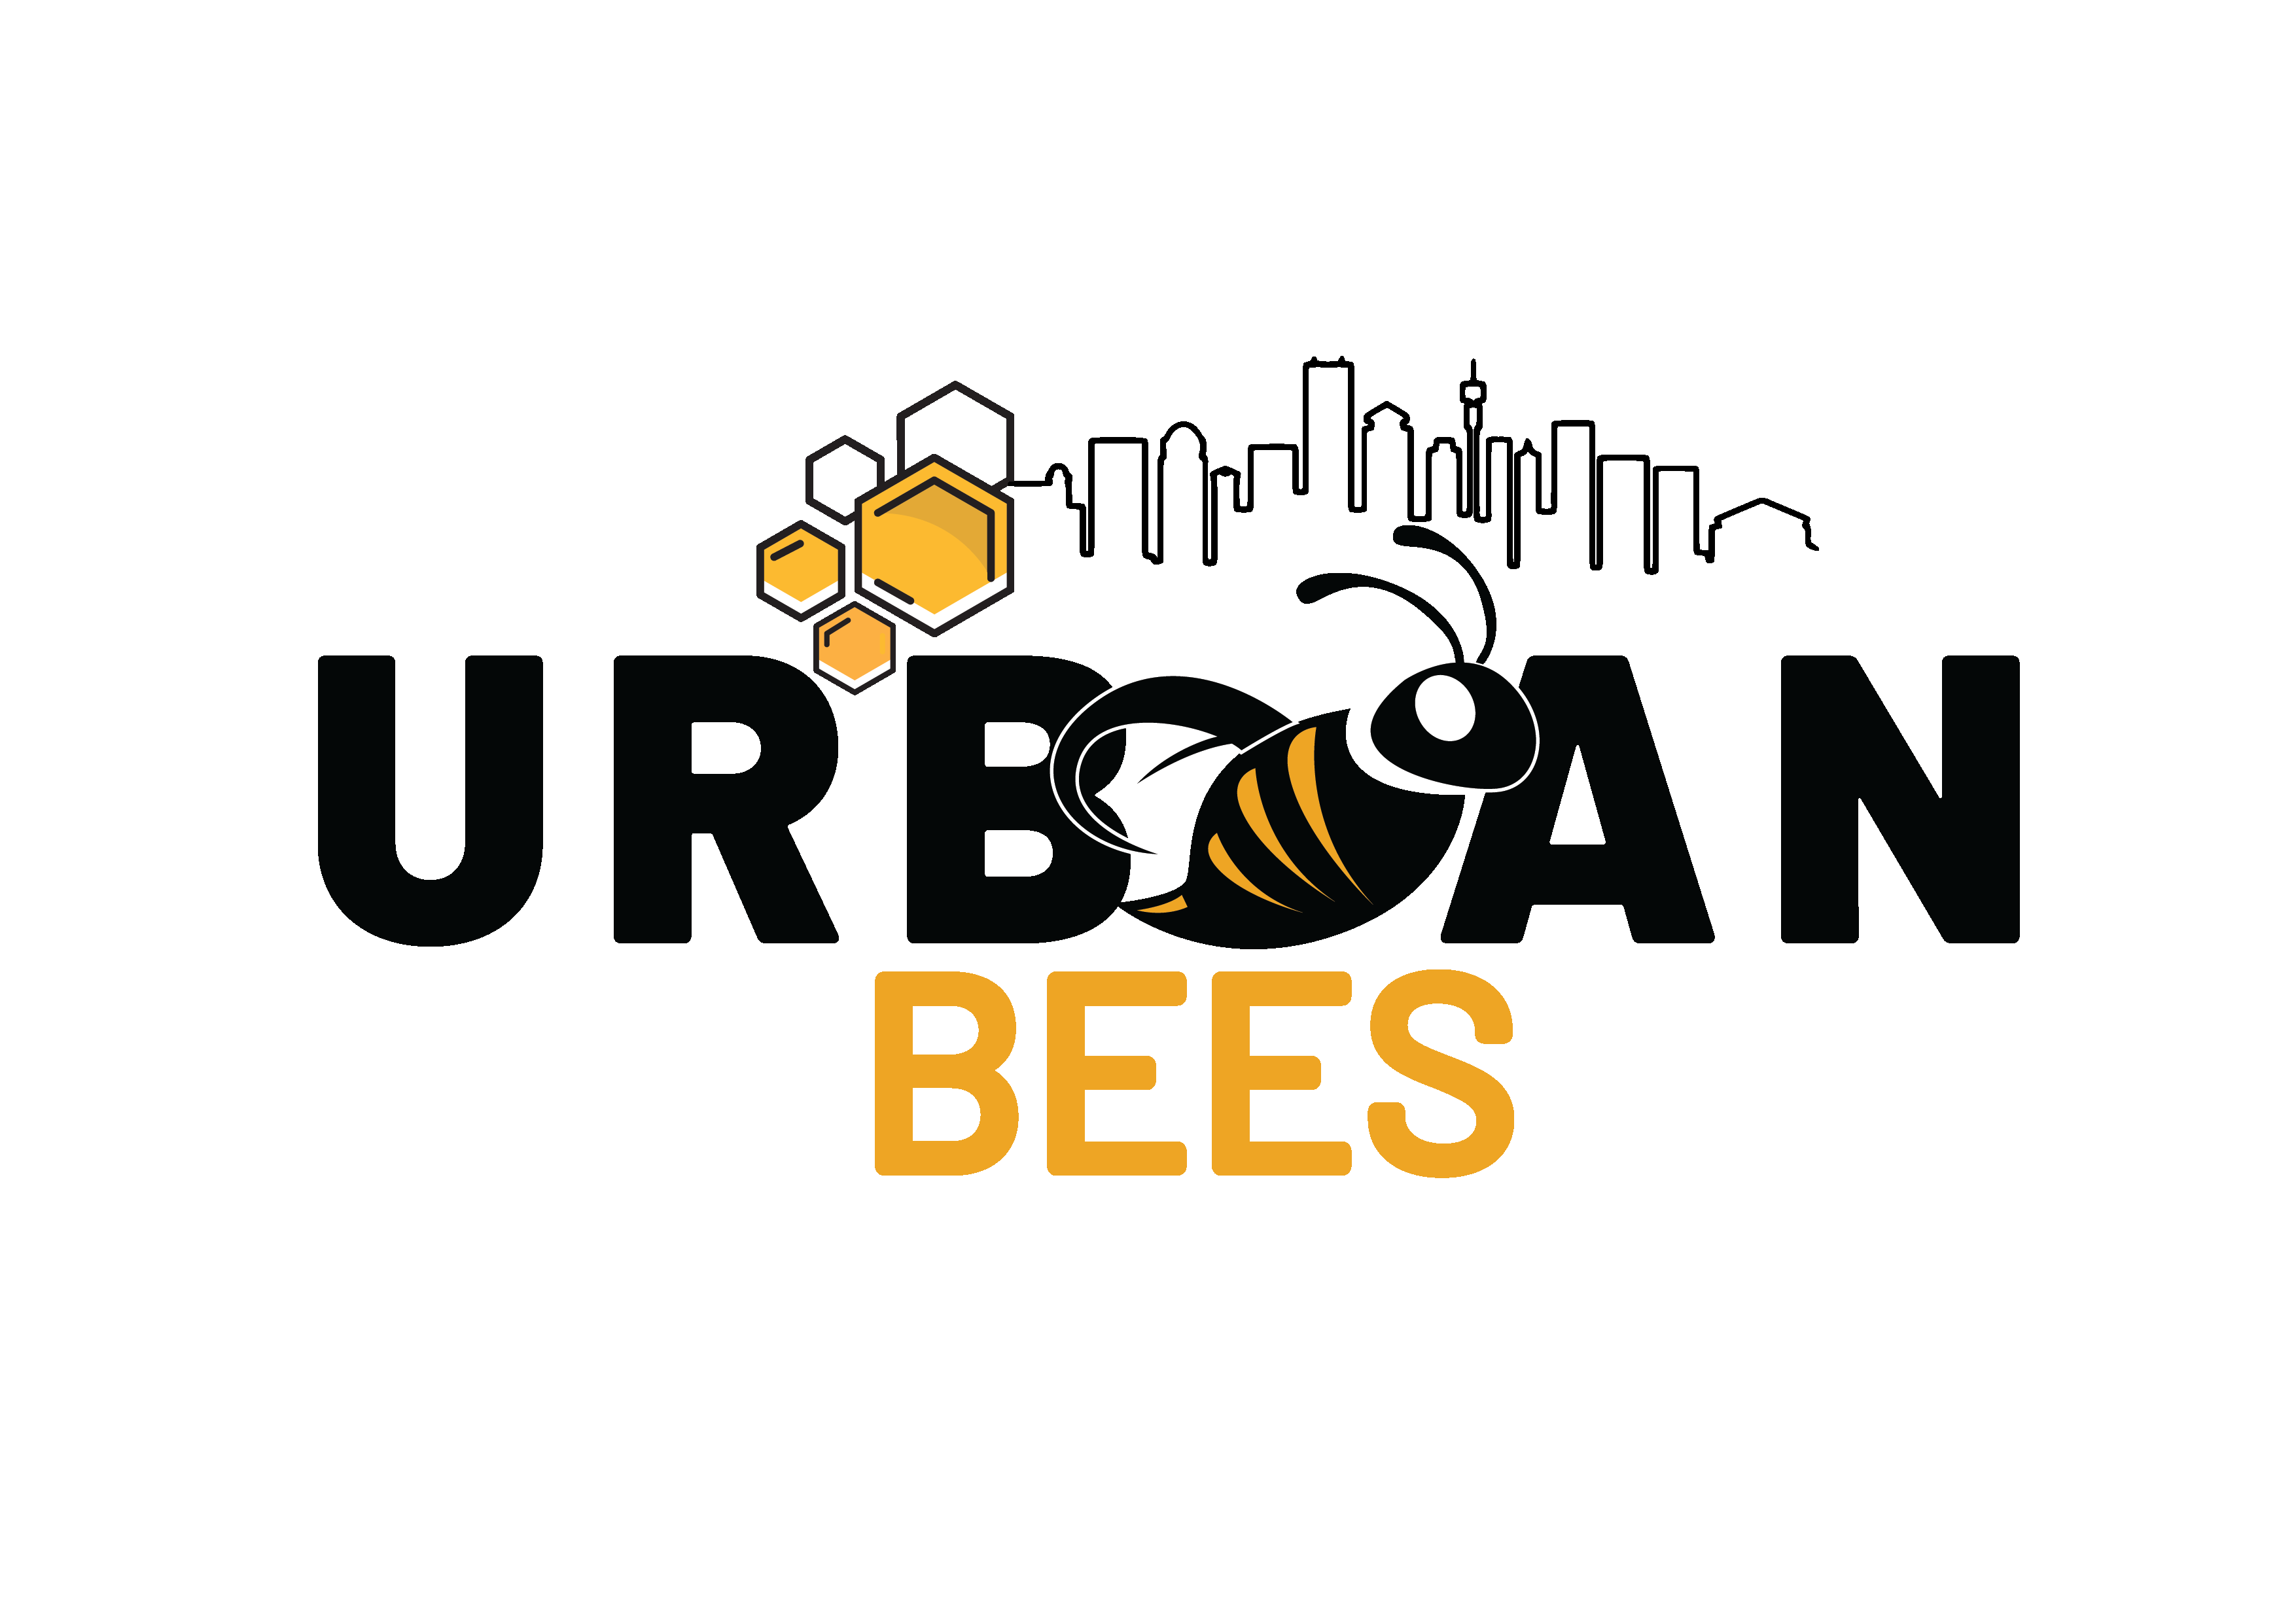 Urban Bees hilft dabei, städtische Gemeinden über die Bedeutung von Bienen aufzuklären